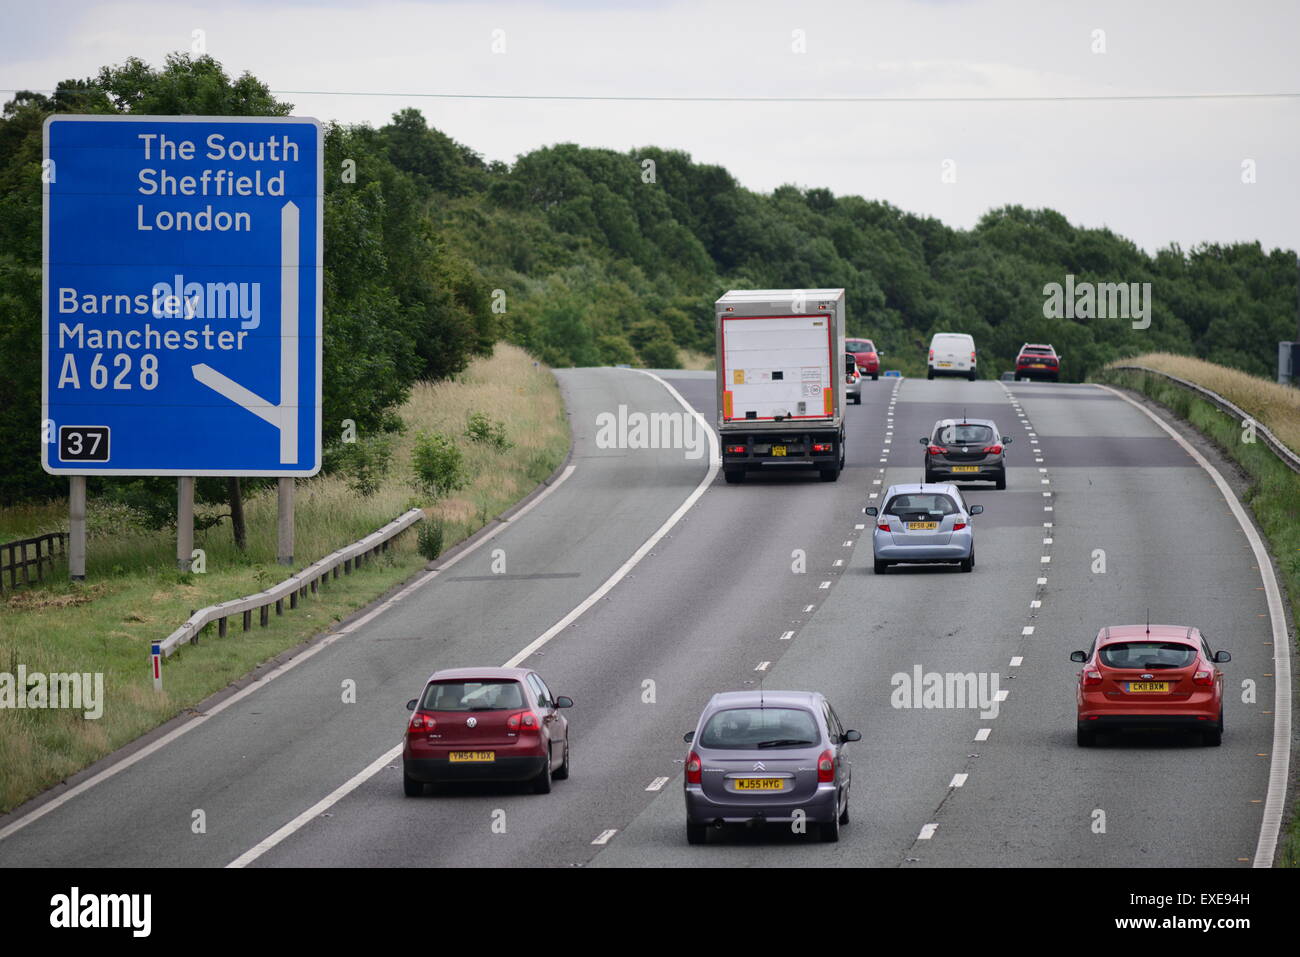 Fahrzeuge fahren auf der Autobahn M1, Barnsley, South Yorkshire, UK. Bild: Scott Bairstow/Alamy Stockfoto